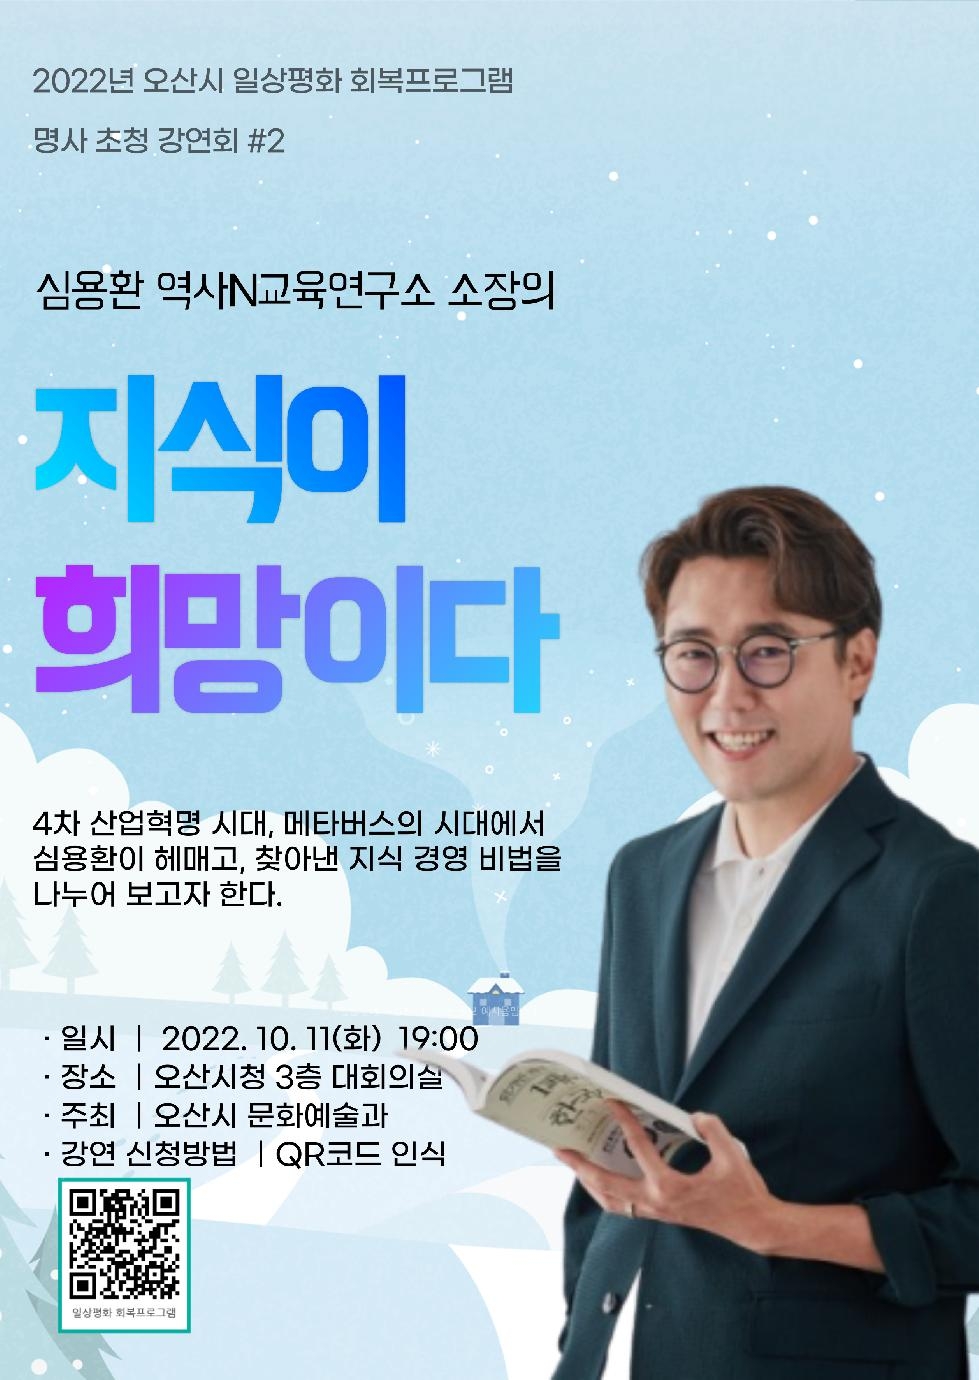 오산시, 11일에 심용환 소장“지식이 희망이다”강연 개최